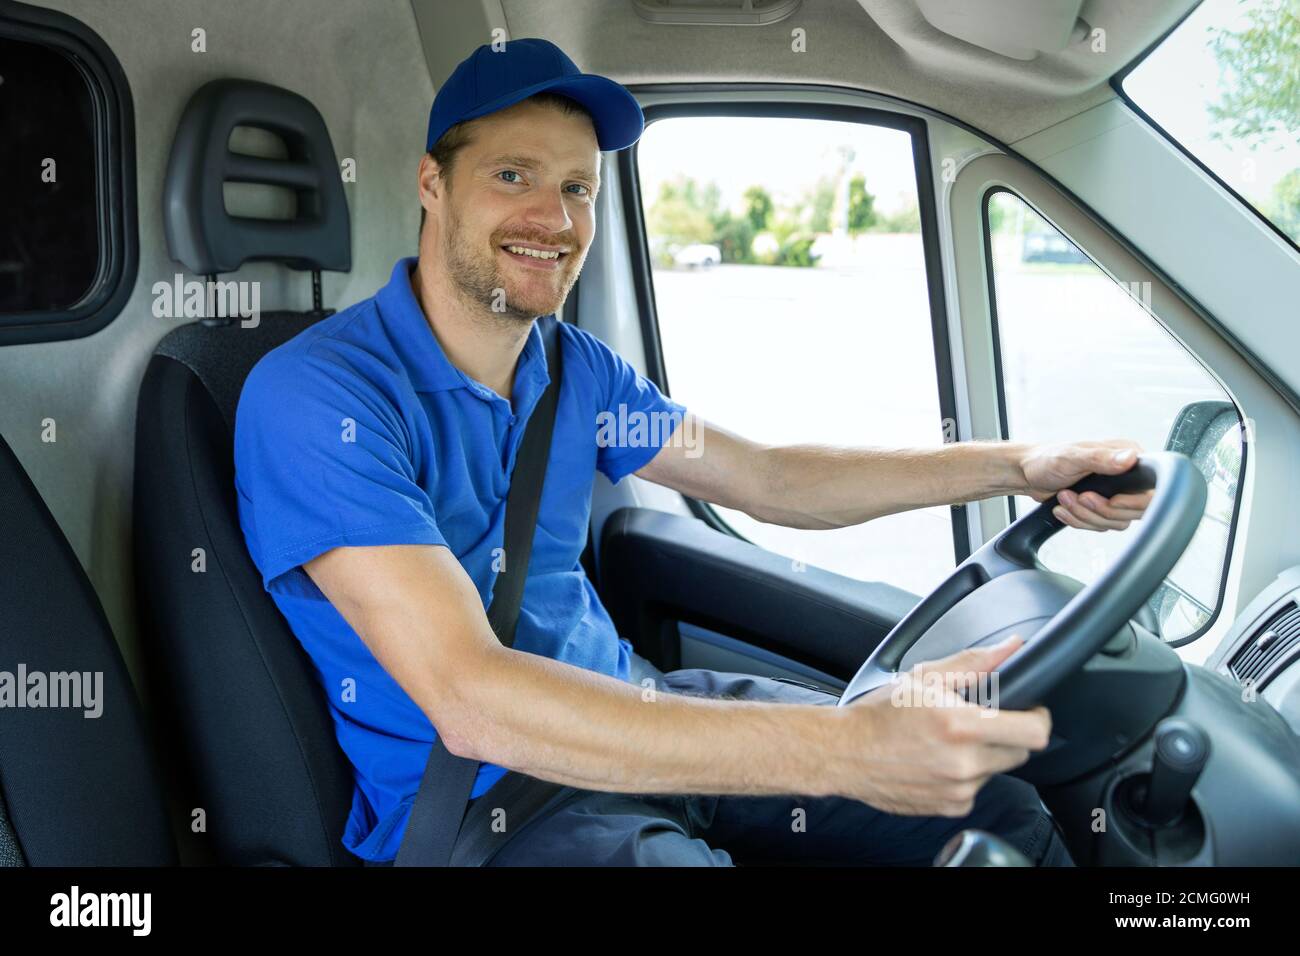 servizi di trasporto - giovane autista di sesso maschile in uniforme blu che guida un furgone. sorridendo alla macchina fotografica Foto Stock